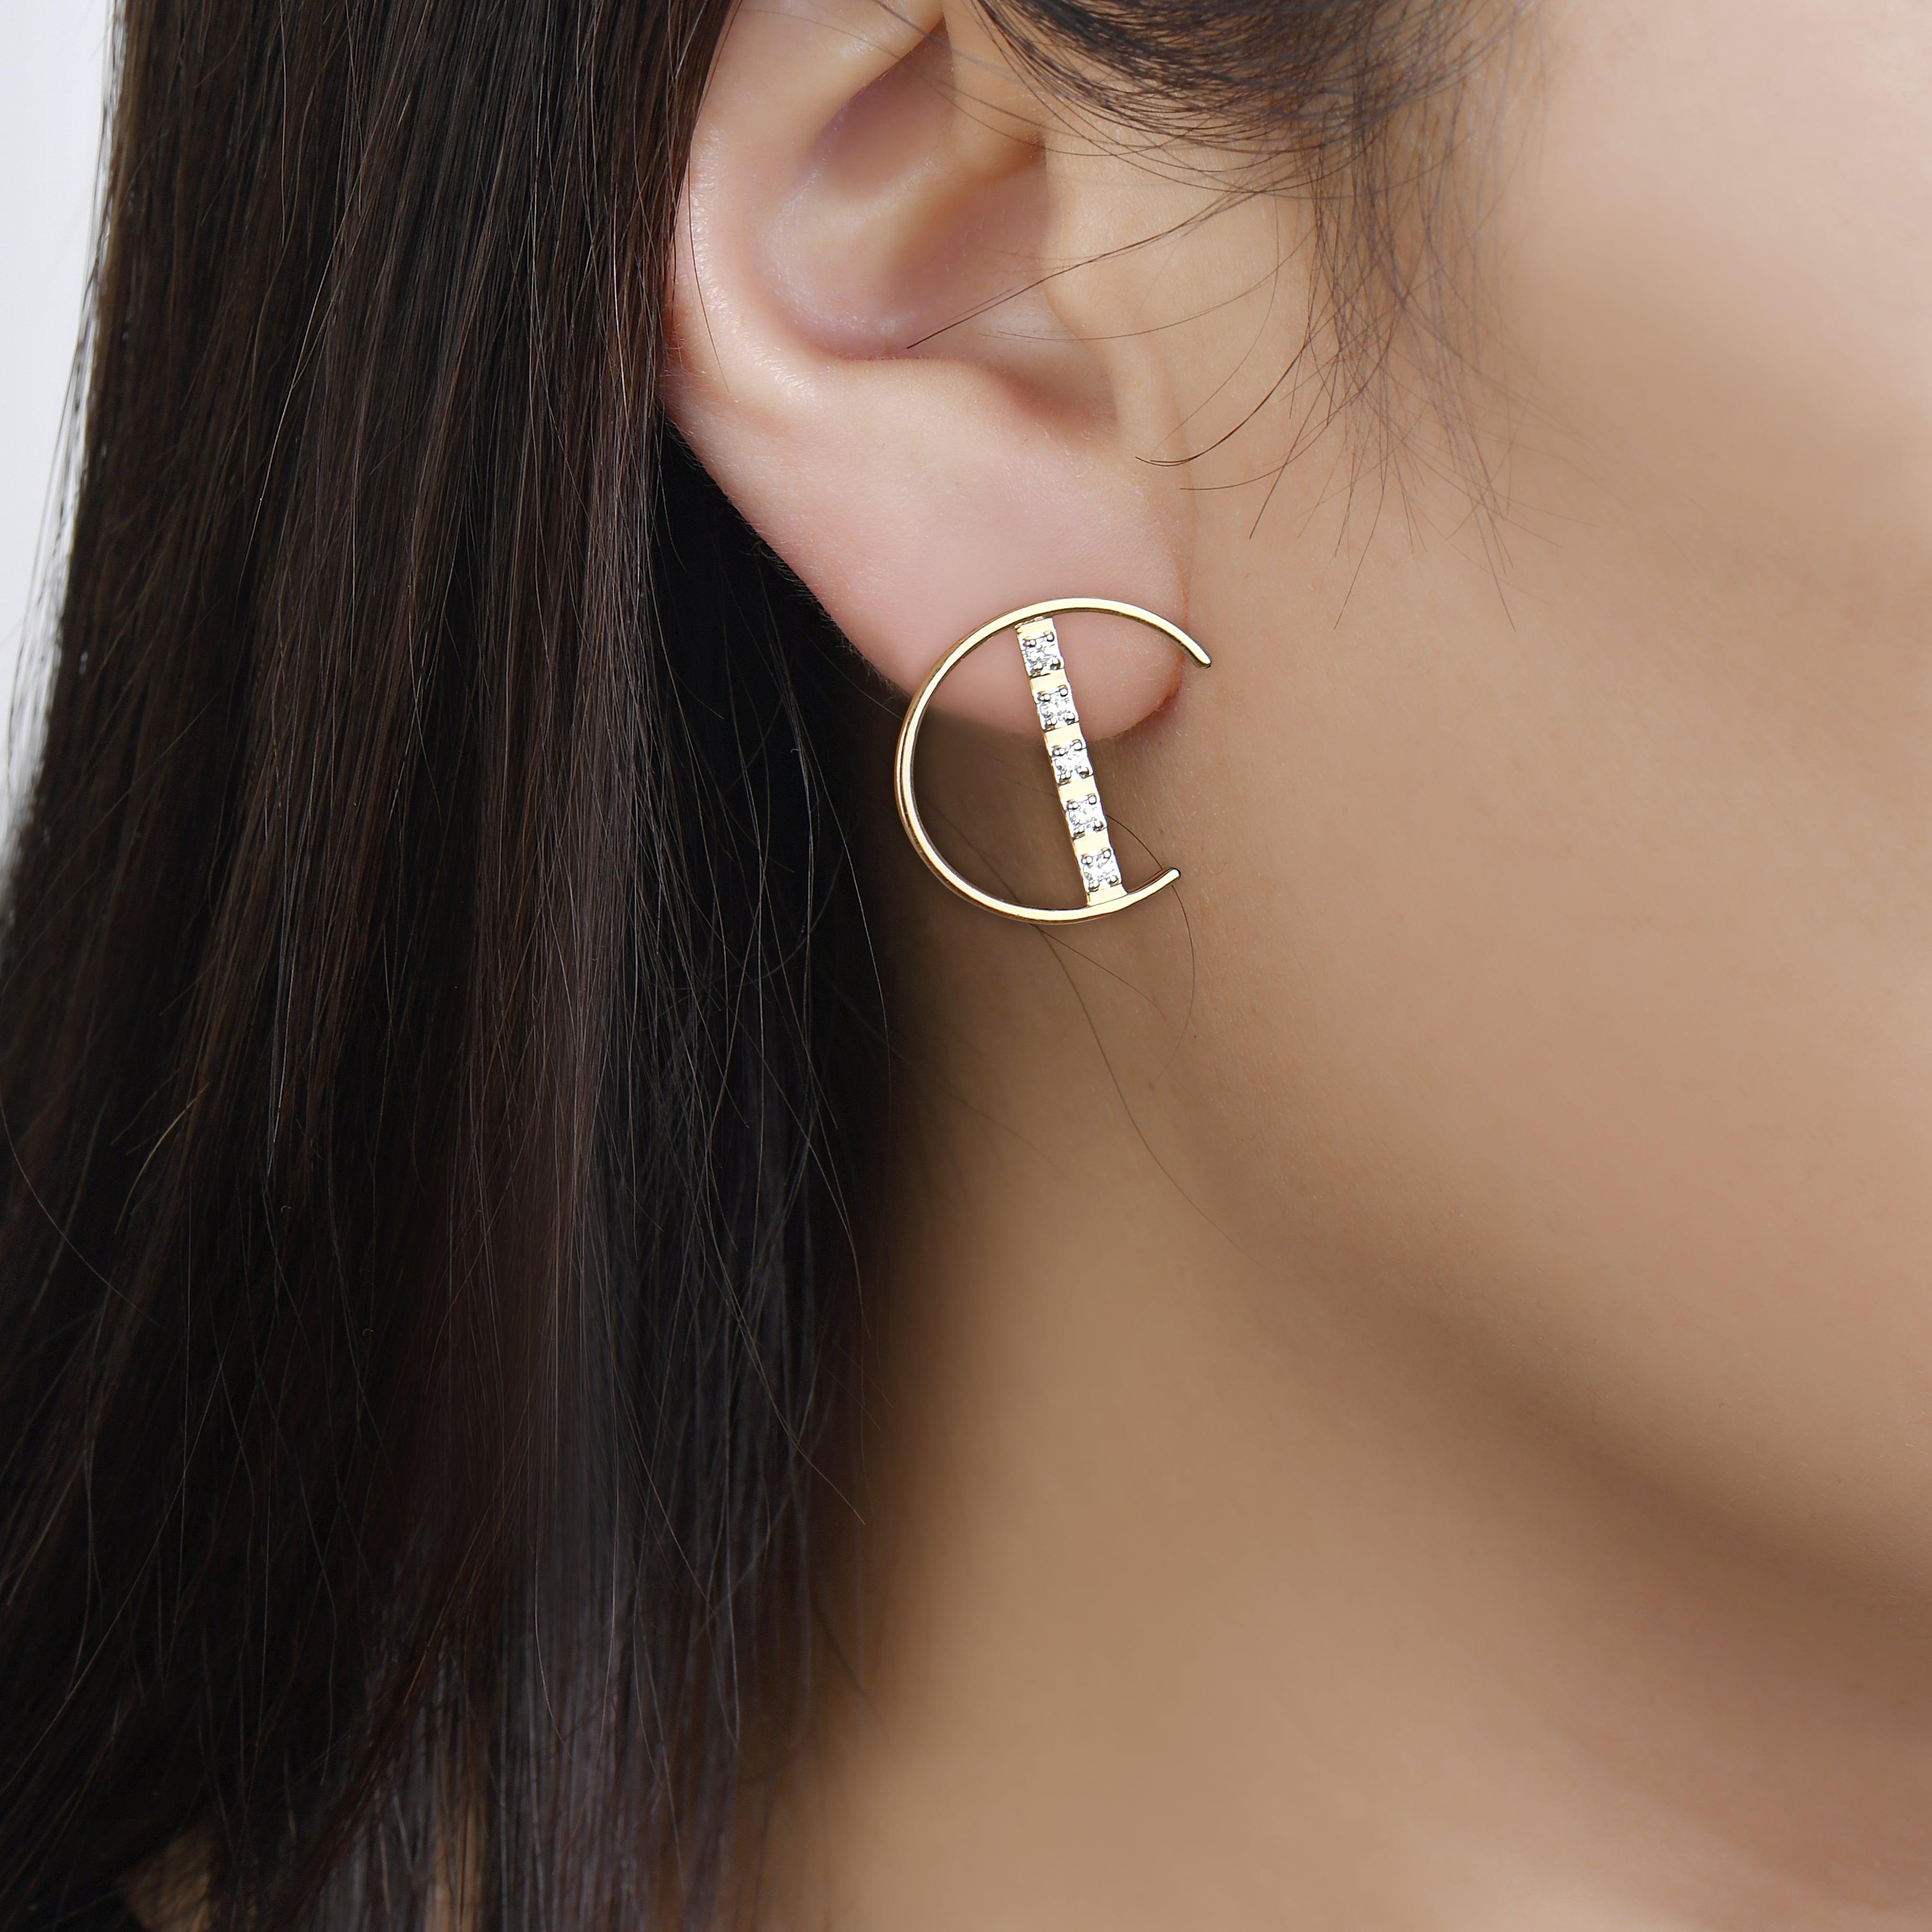 Unsere halbkreisförmigen Diamant-Barren-Ohrringe sind der Inbegriff eines Doppelgängers. Ein schlichtes und doch atemberaubendes Design für ein einzigartiges Paar Ohrringe aus 14k Gelbgold. Entdecken Sie die Eleganz dieser einzigartigen Ohrstecker